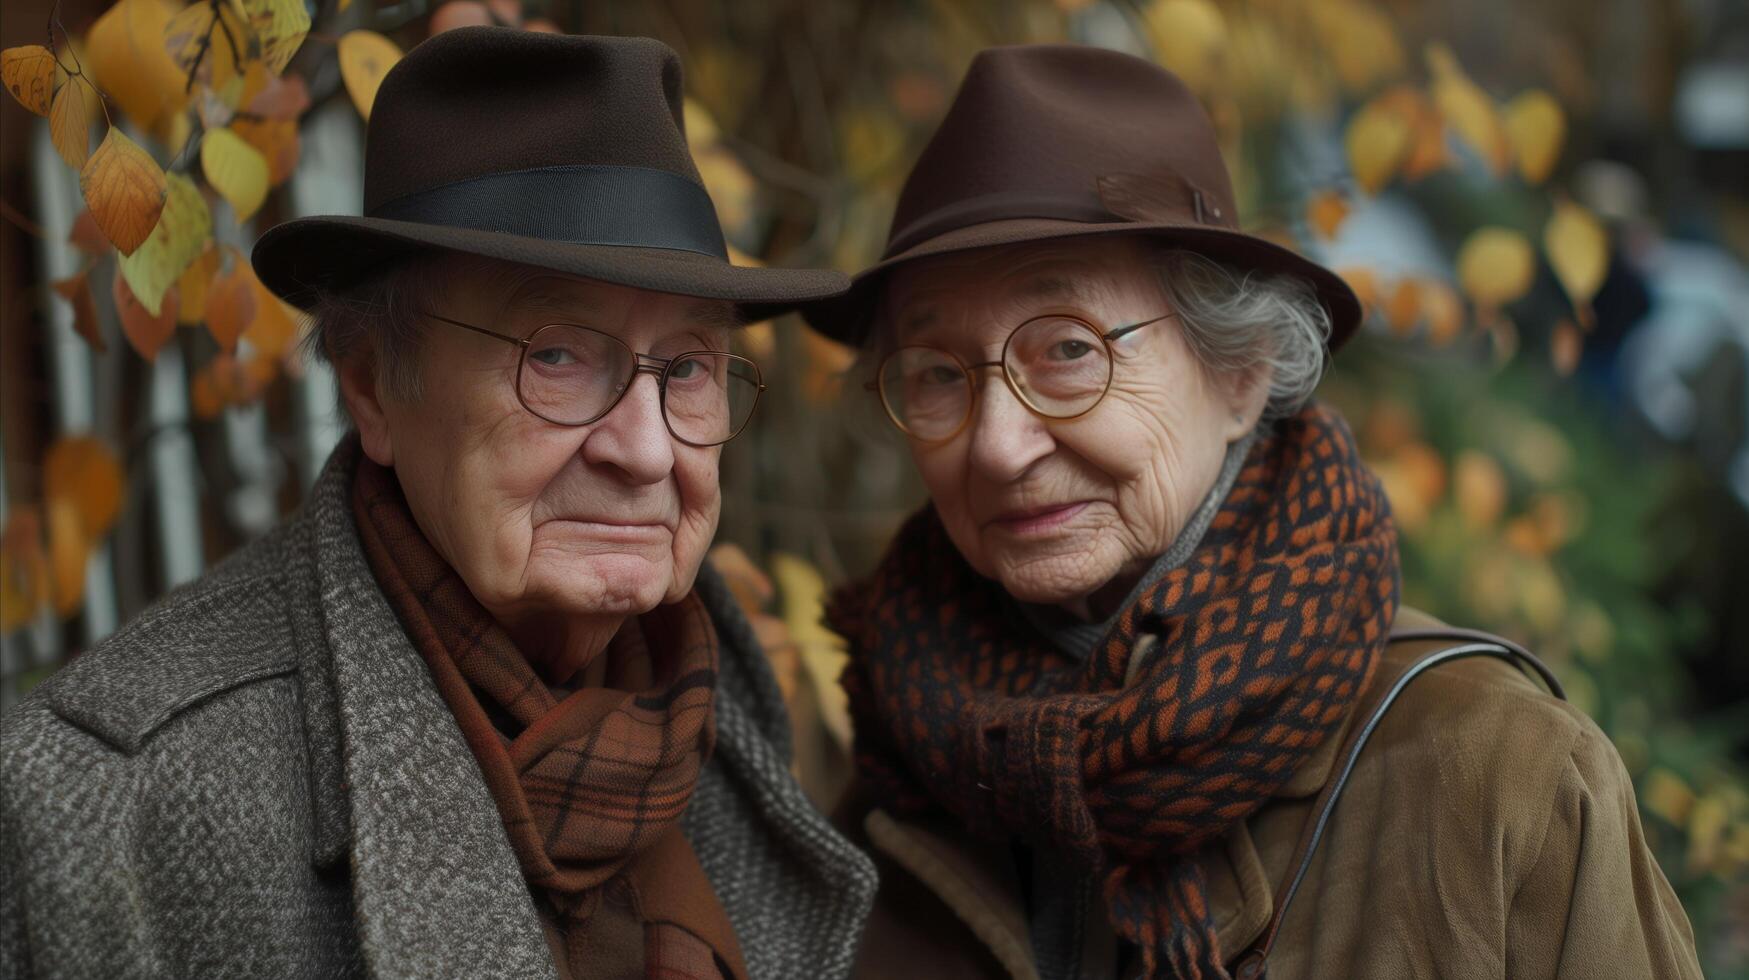 Elderly Couple in Autumn Attire Outdoors photo